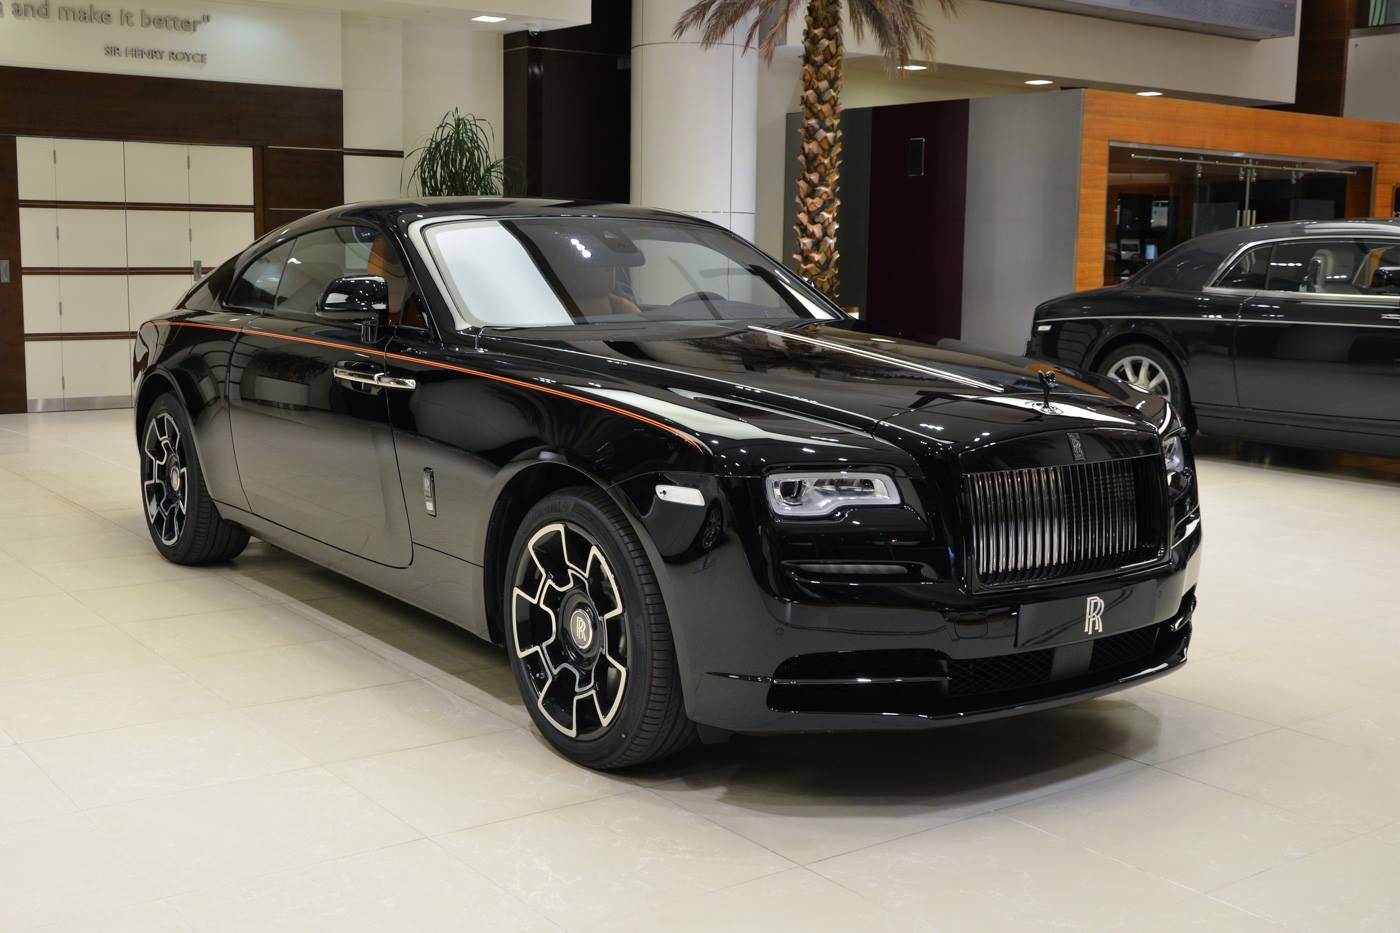 Роллс врайт. Роллс Ройс врайт. Rolls Royce Wraith черный. Rolls Royce Wraith Black badge. Роллс Ройс Wraith Black badge.